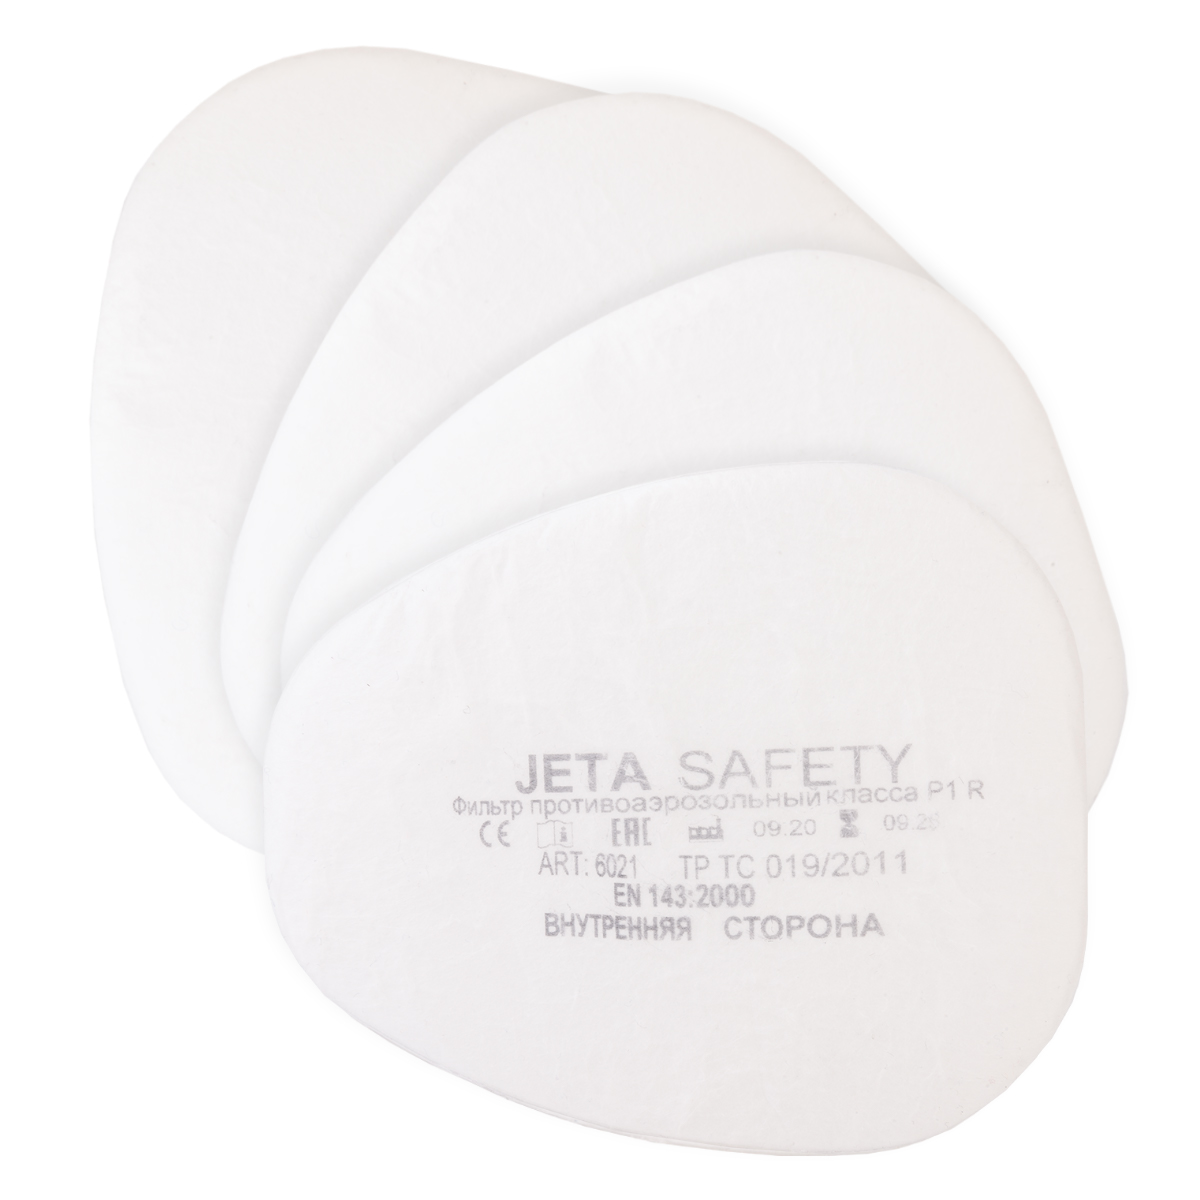 Предфильтры от пыли и аэрозолей P1 R (4 шт.) JETA SAFETY 6021